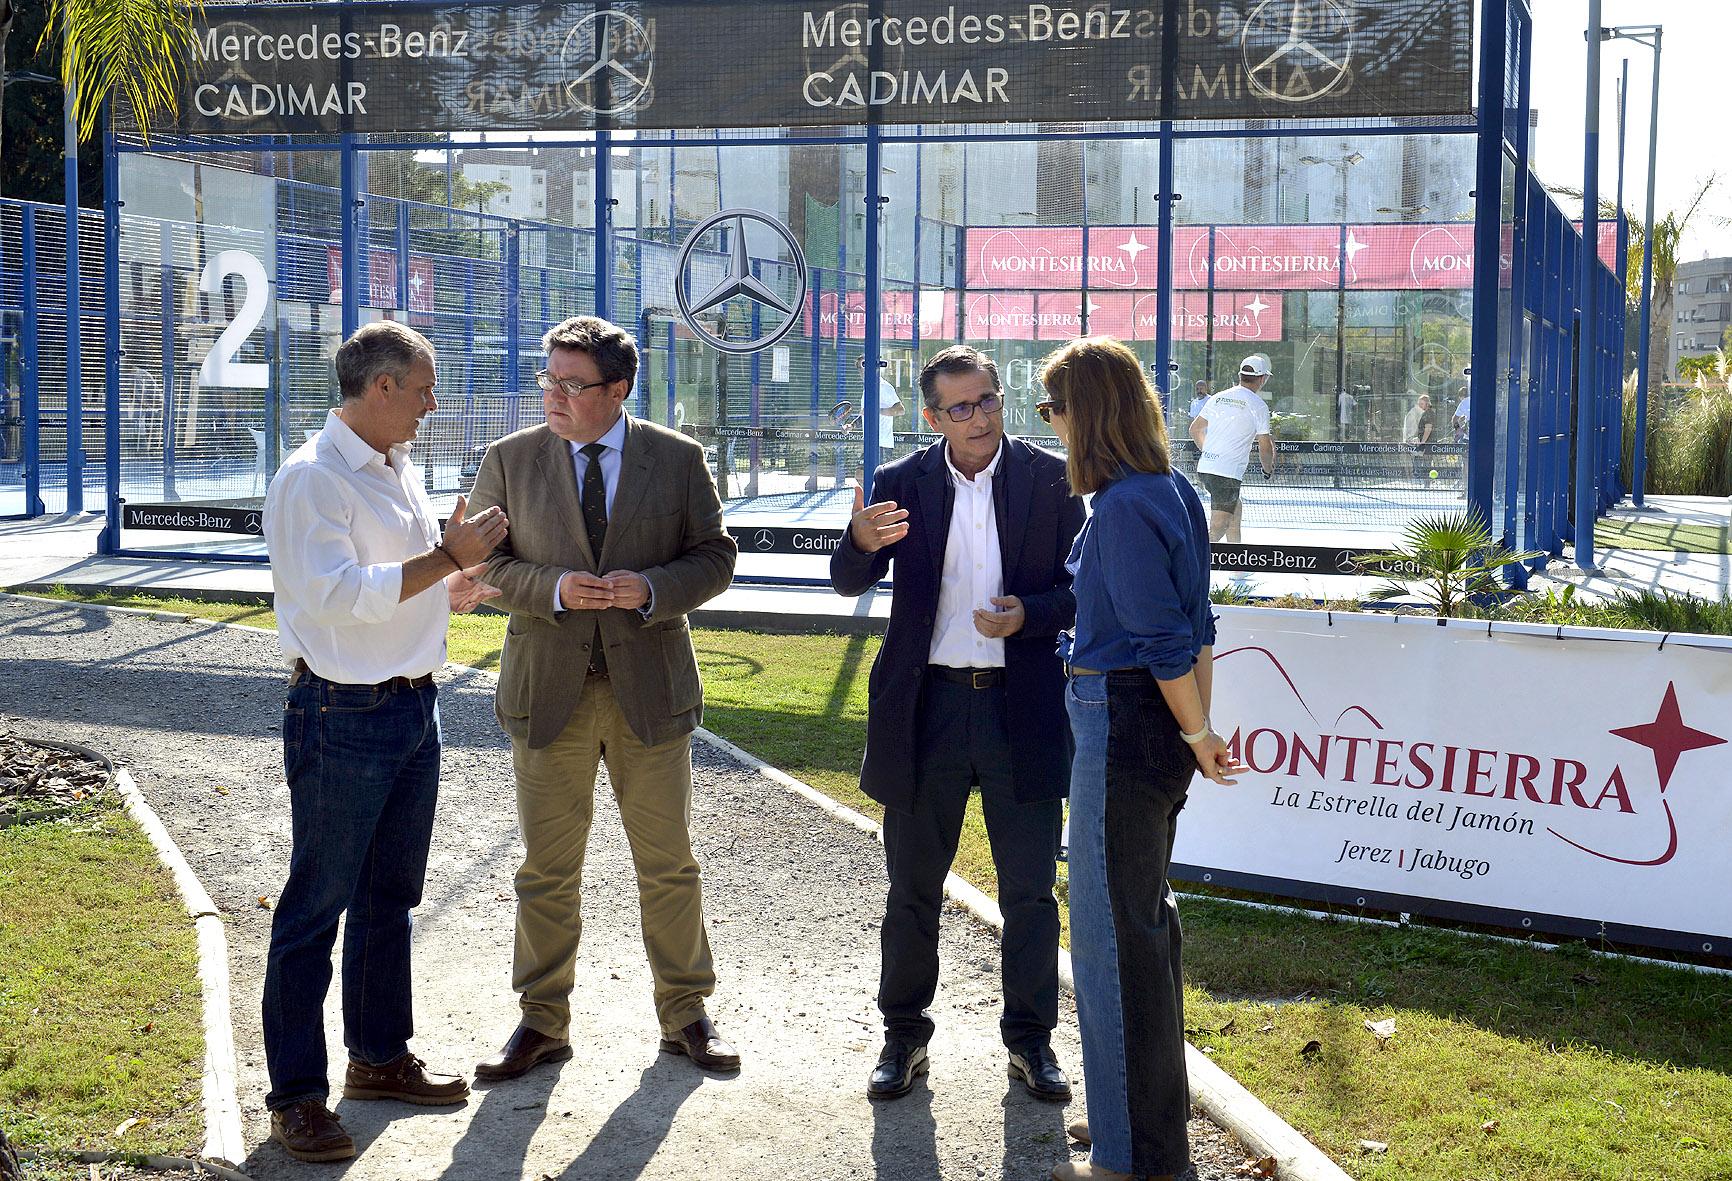 The Racket Club, en Jerez, acogerá el XXVII Torneo de Tenis y Pádel Montesierra